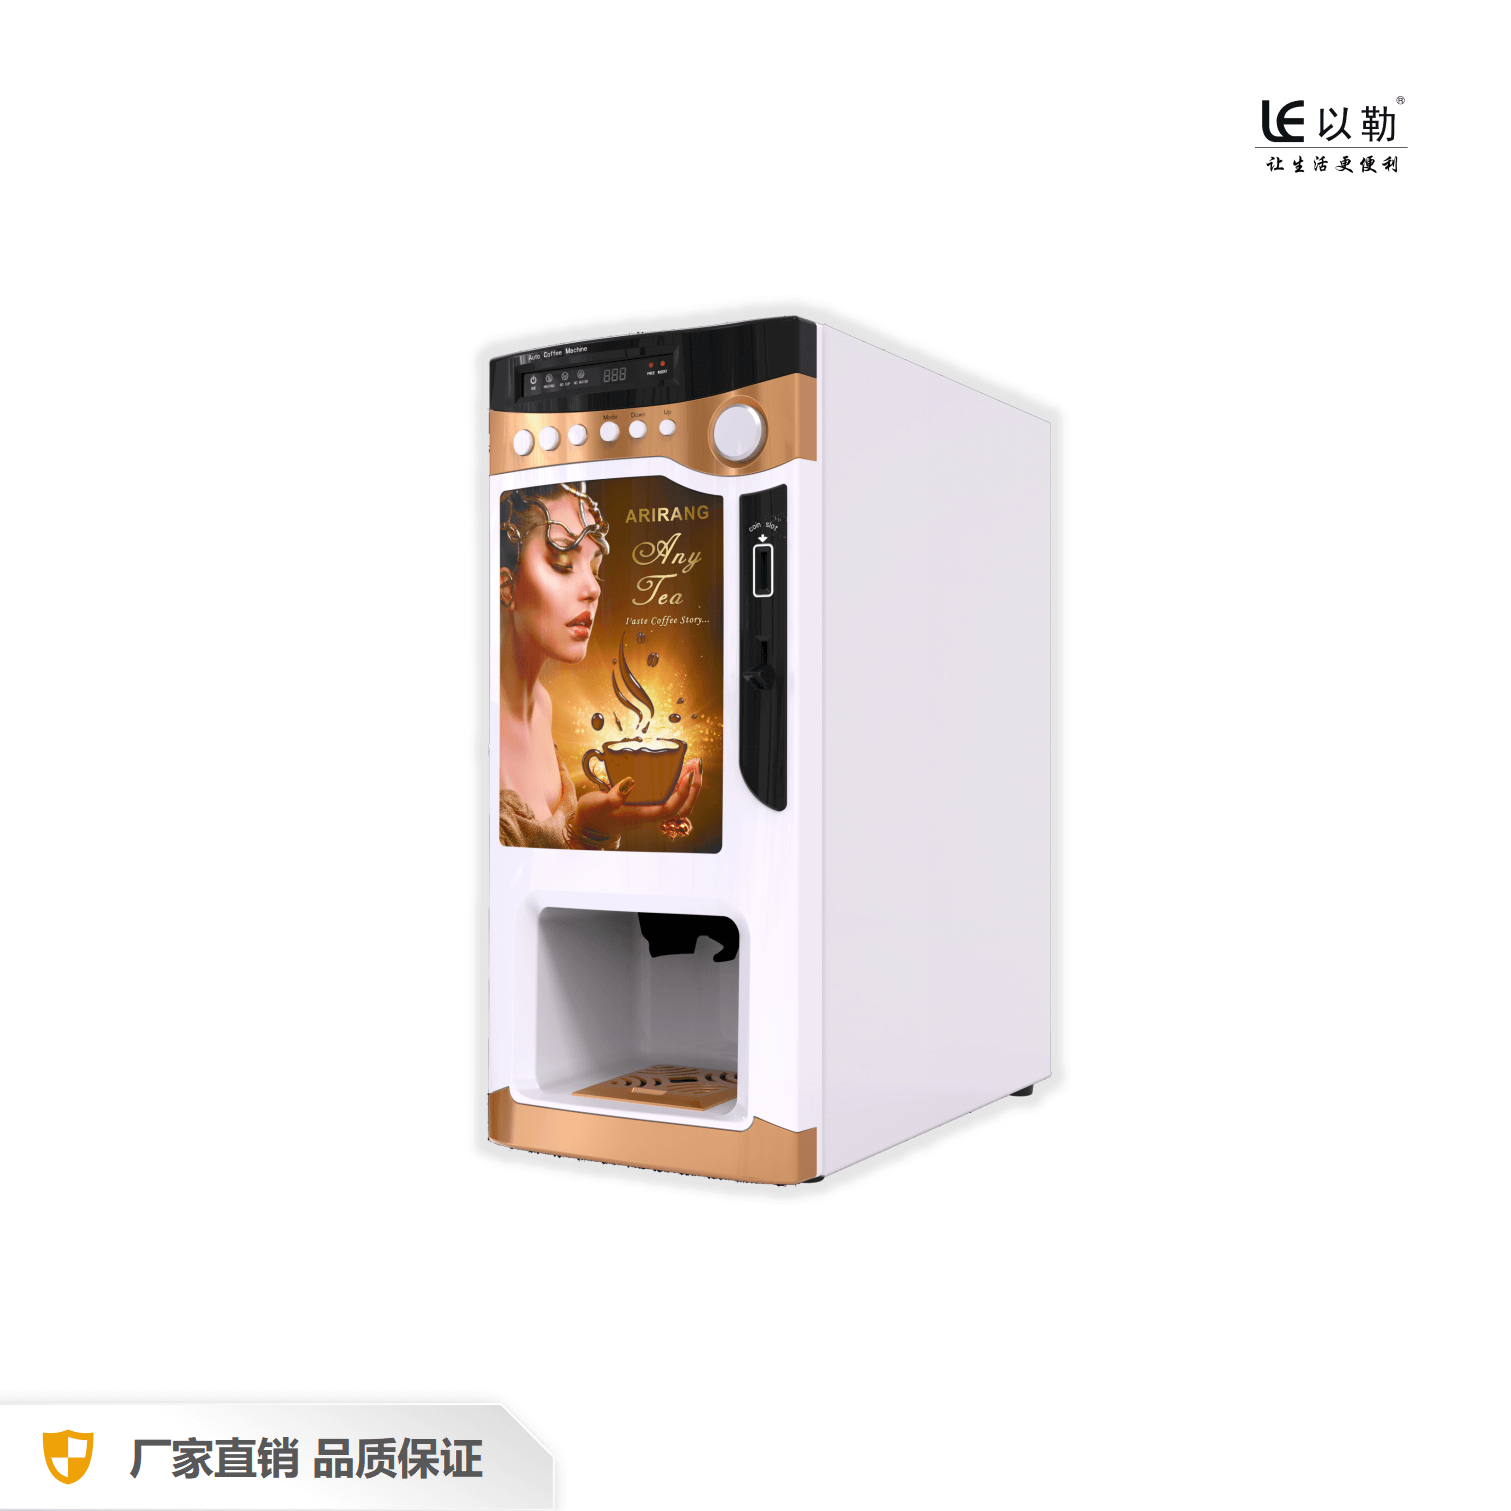 Máquina expendedora de café instantáneo que funciona con monedas con dispensador de tazas